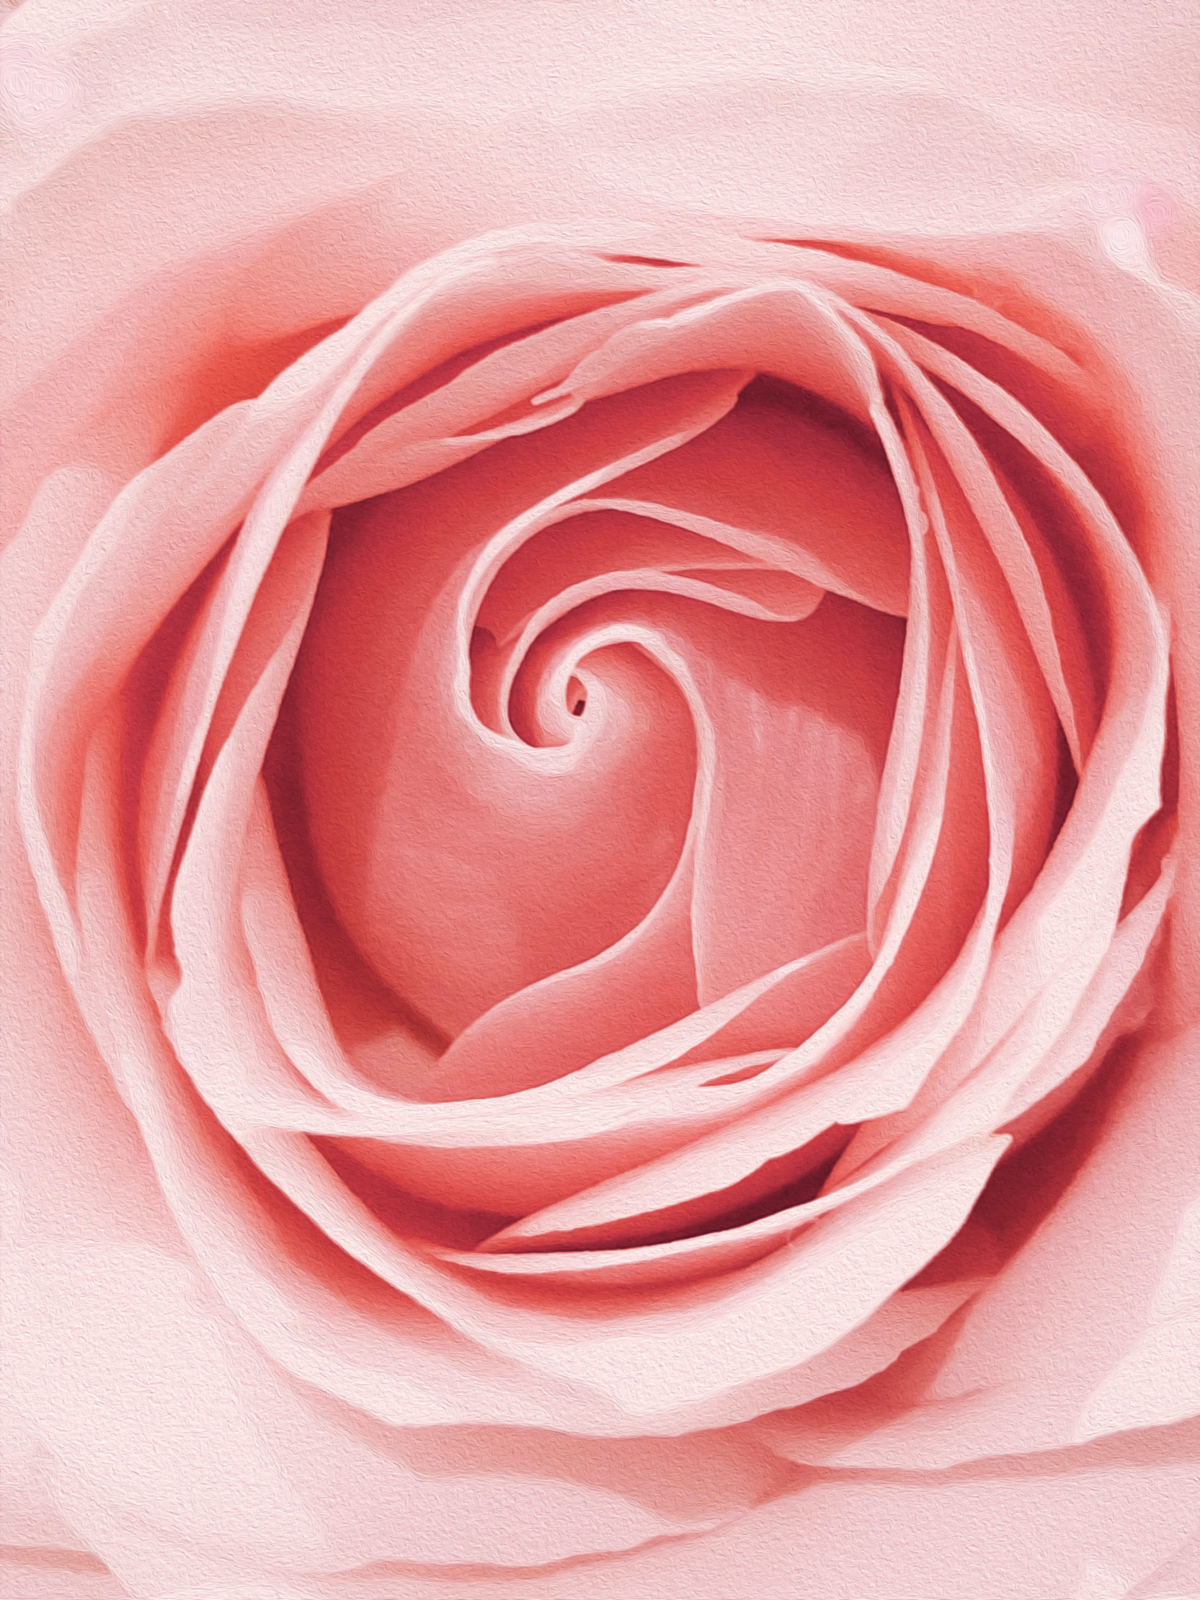 pink rose up close